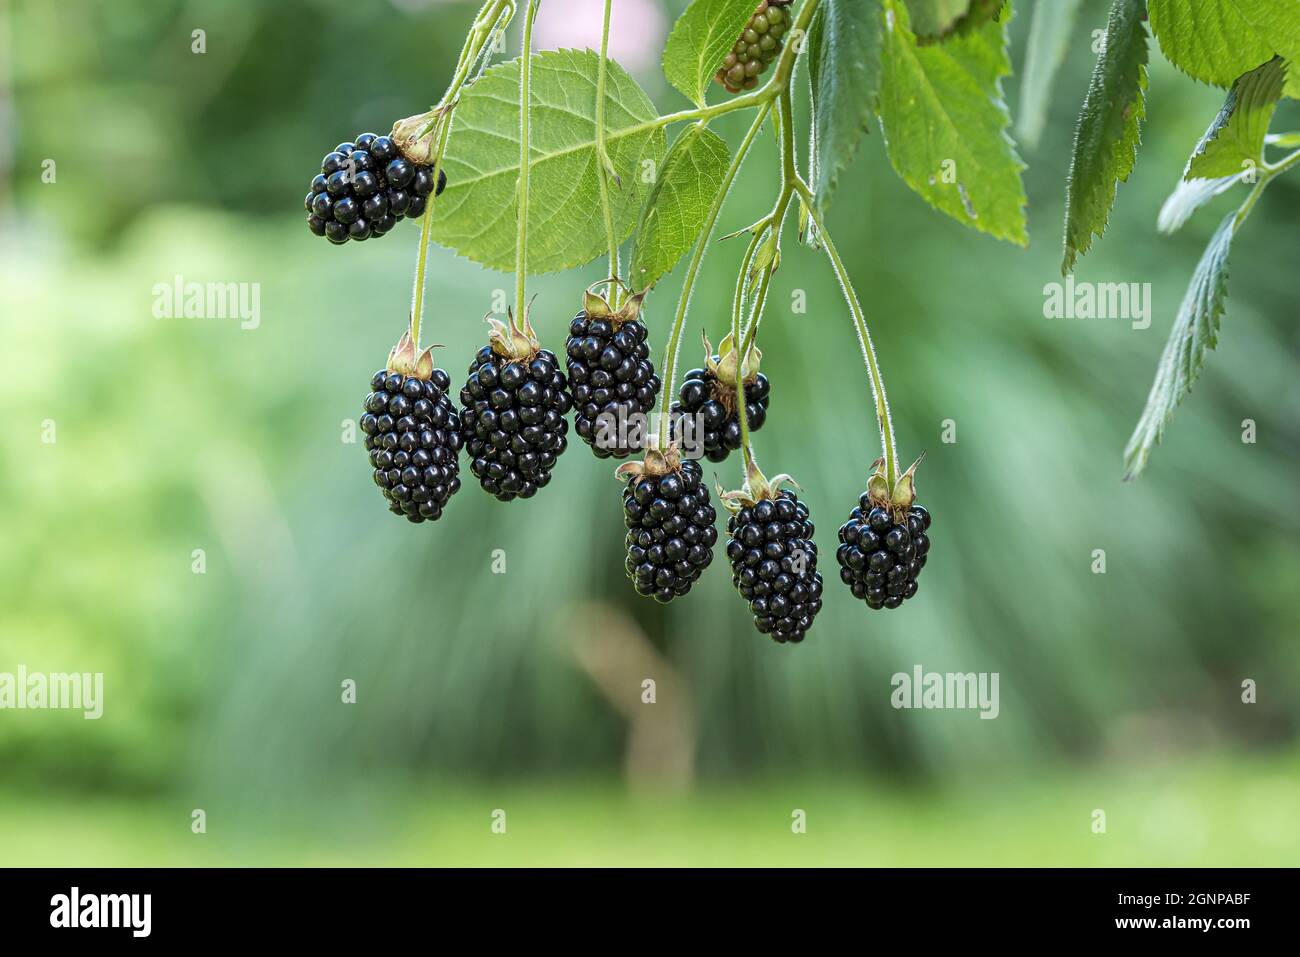 BlackBerry Baby Cakes (Rubus fruticosus 'Baby Cakes', Rubus fruticosus Baby Cakes), moras en una rama, cultivar Baby Cakes Foto de stock